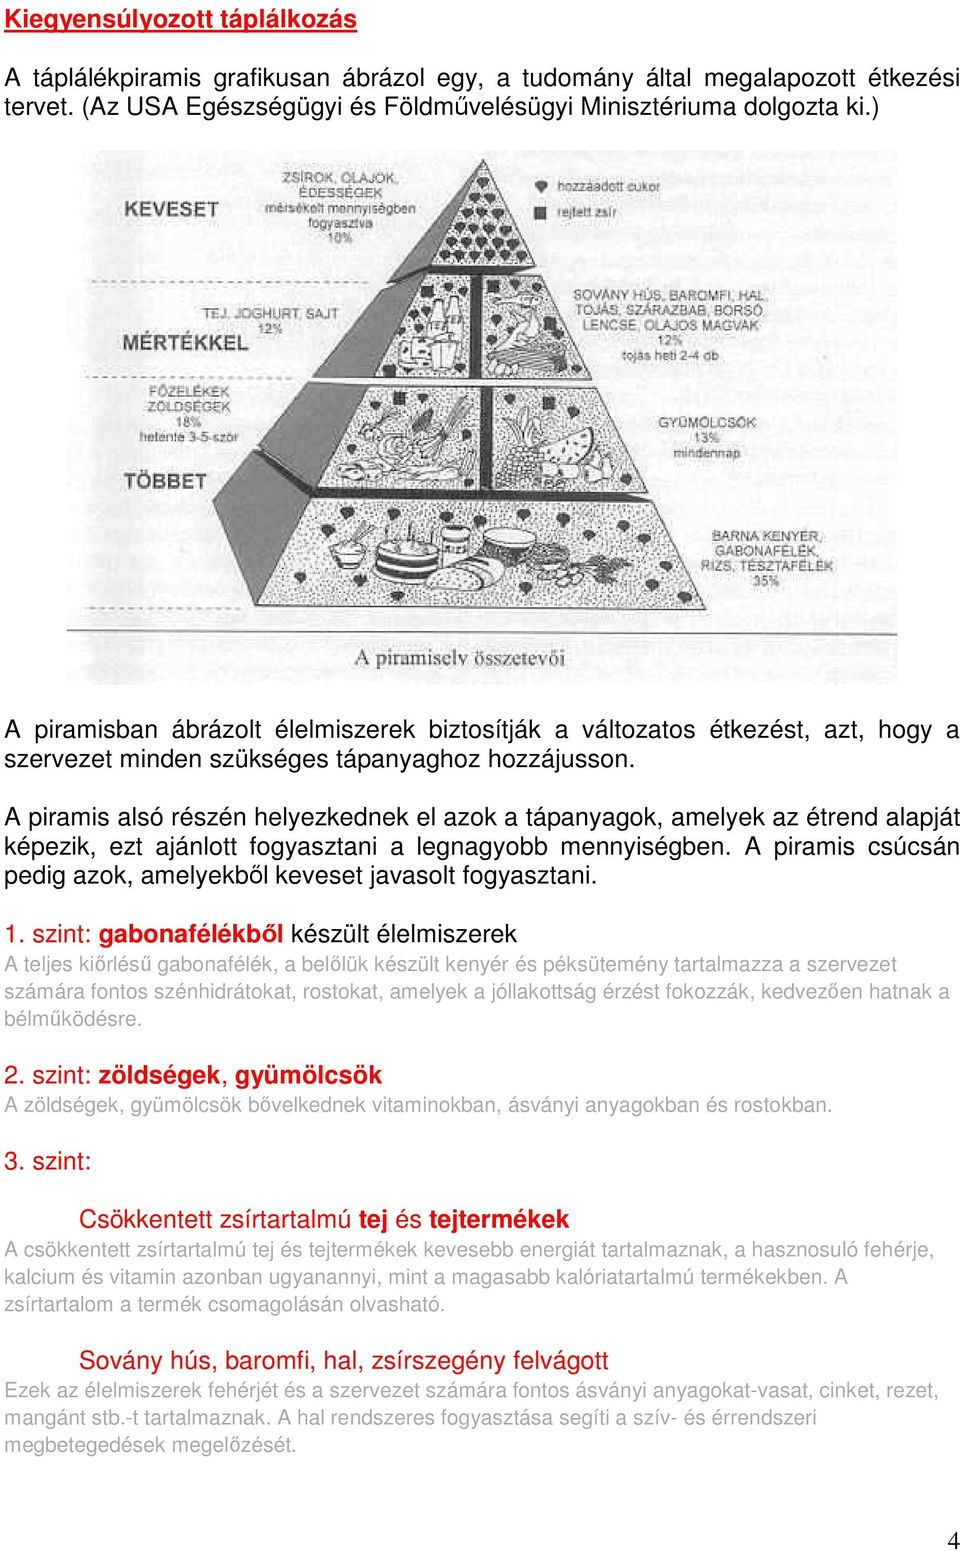 A piramis alsó részén helyezkednek el azok a tápanyagok, amelyek az étrend alapját képezik, ezt ajánlott fogyasztani a legnagyobb mennyiségben.